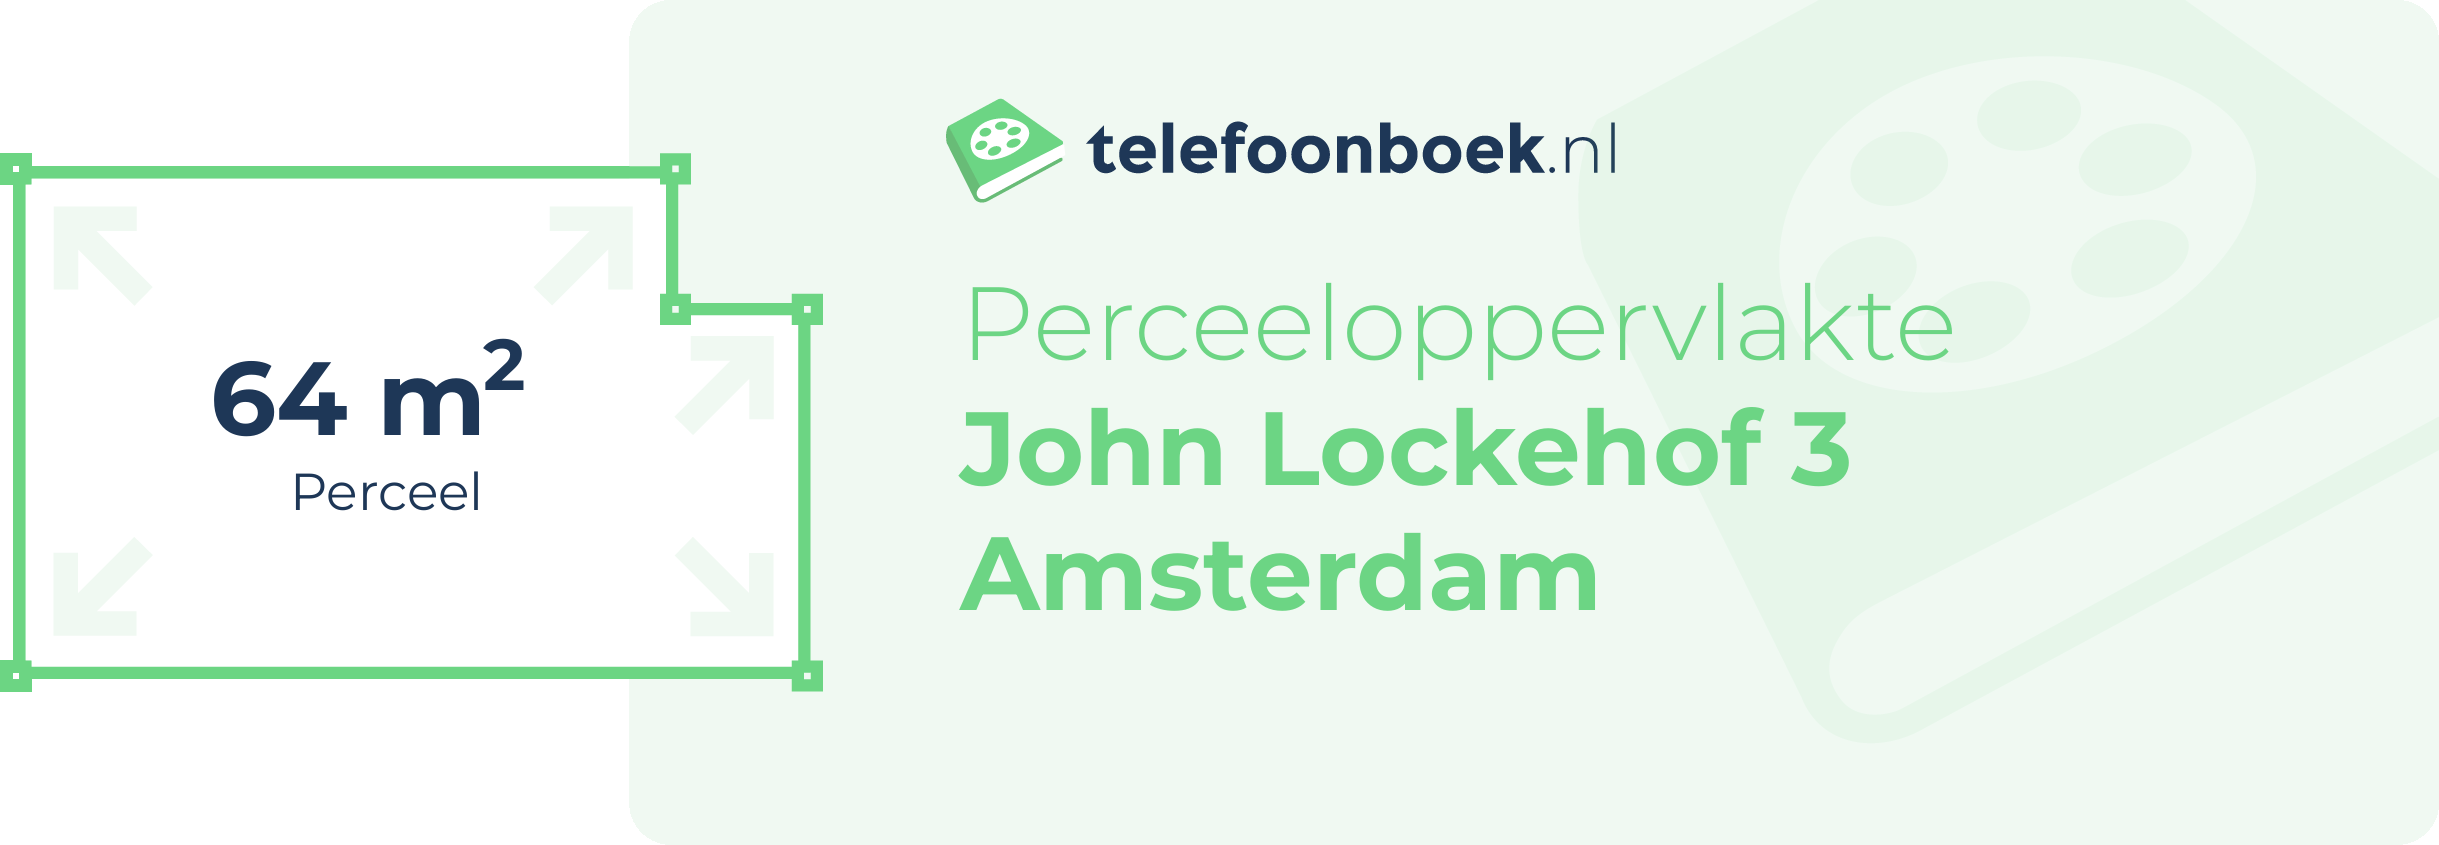 Perceeloppervlakte John Lockehof 3 Amsterdam